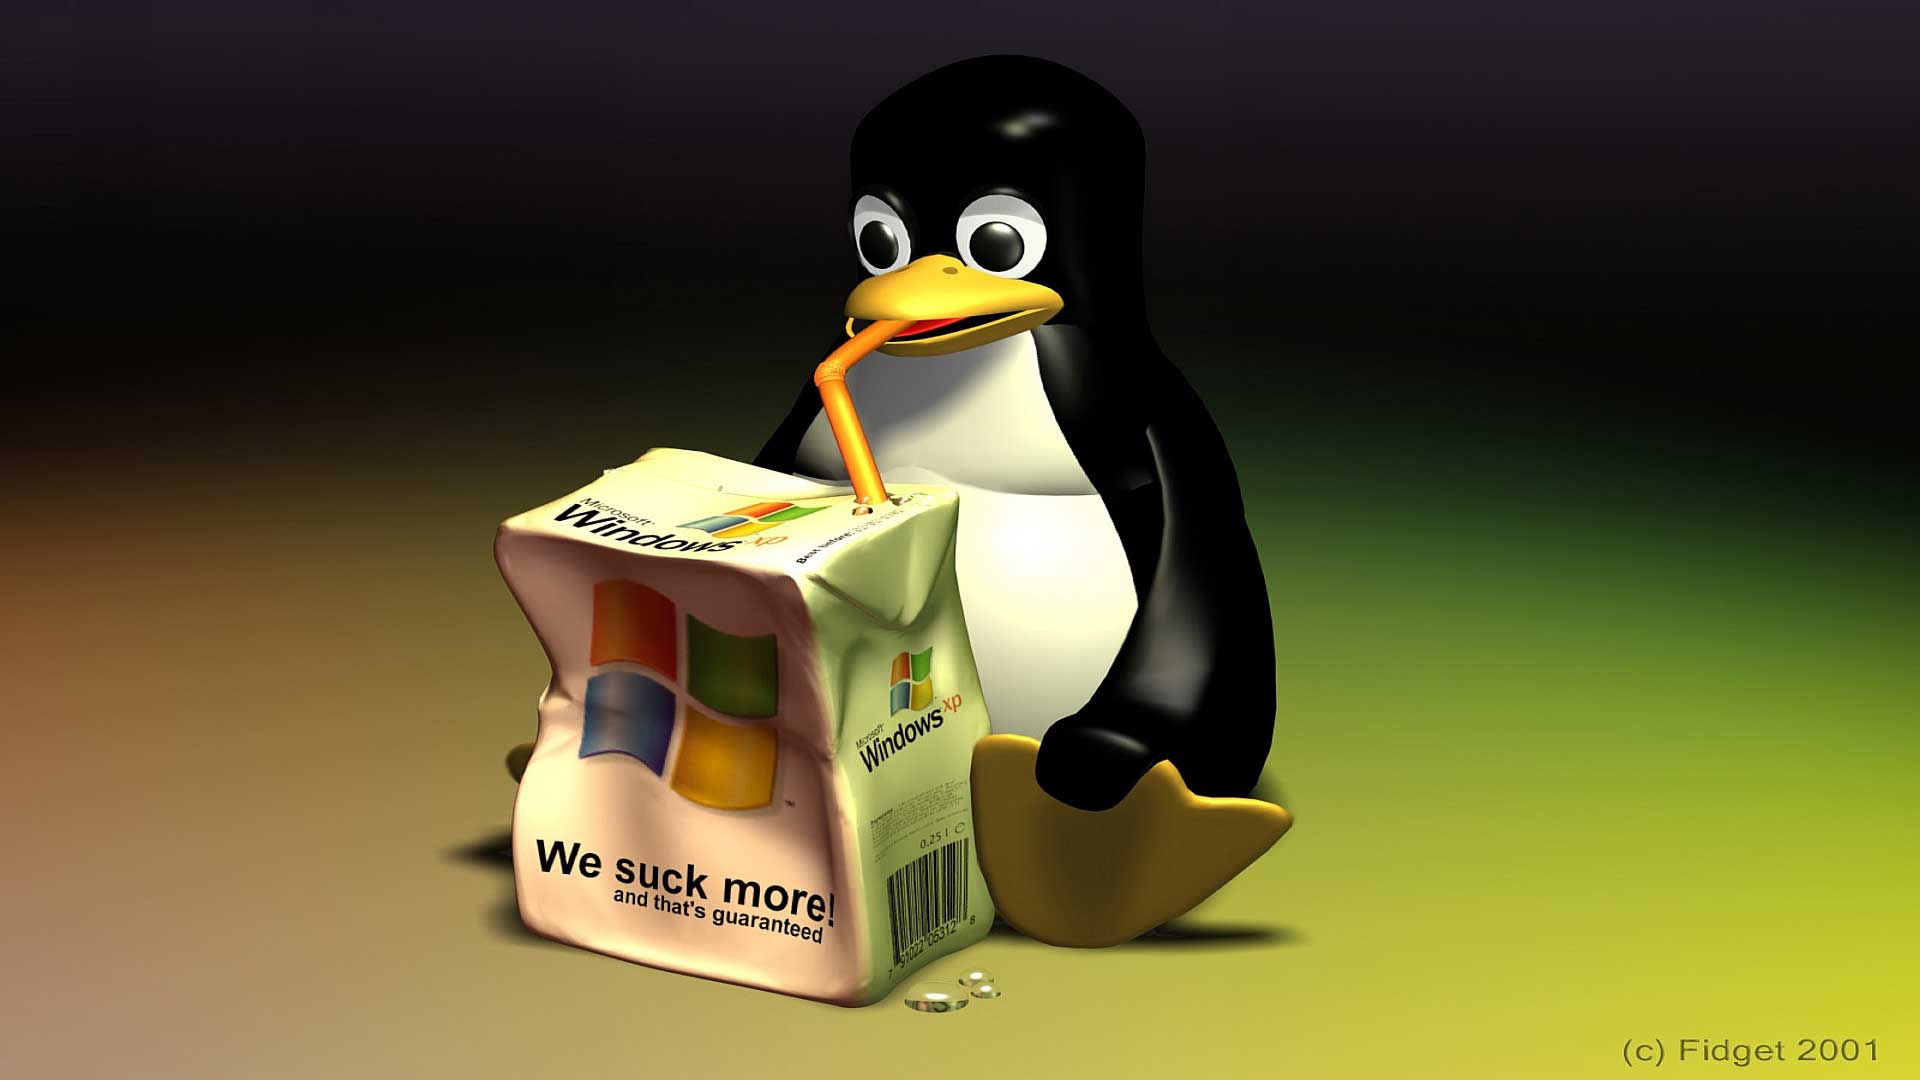 Linux Penguin Windows XP 3D Wallpaper wallpapers at GetHDPic.com